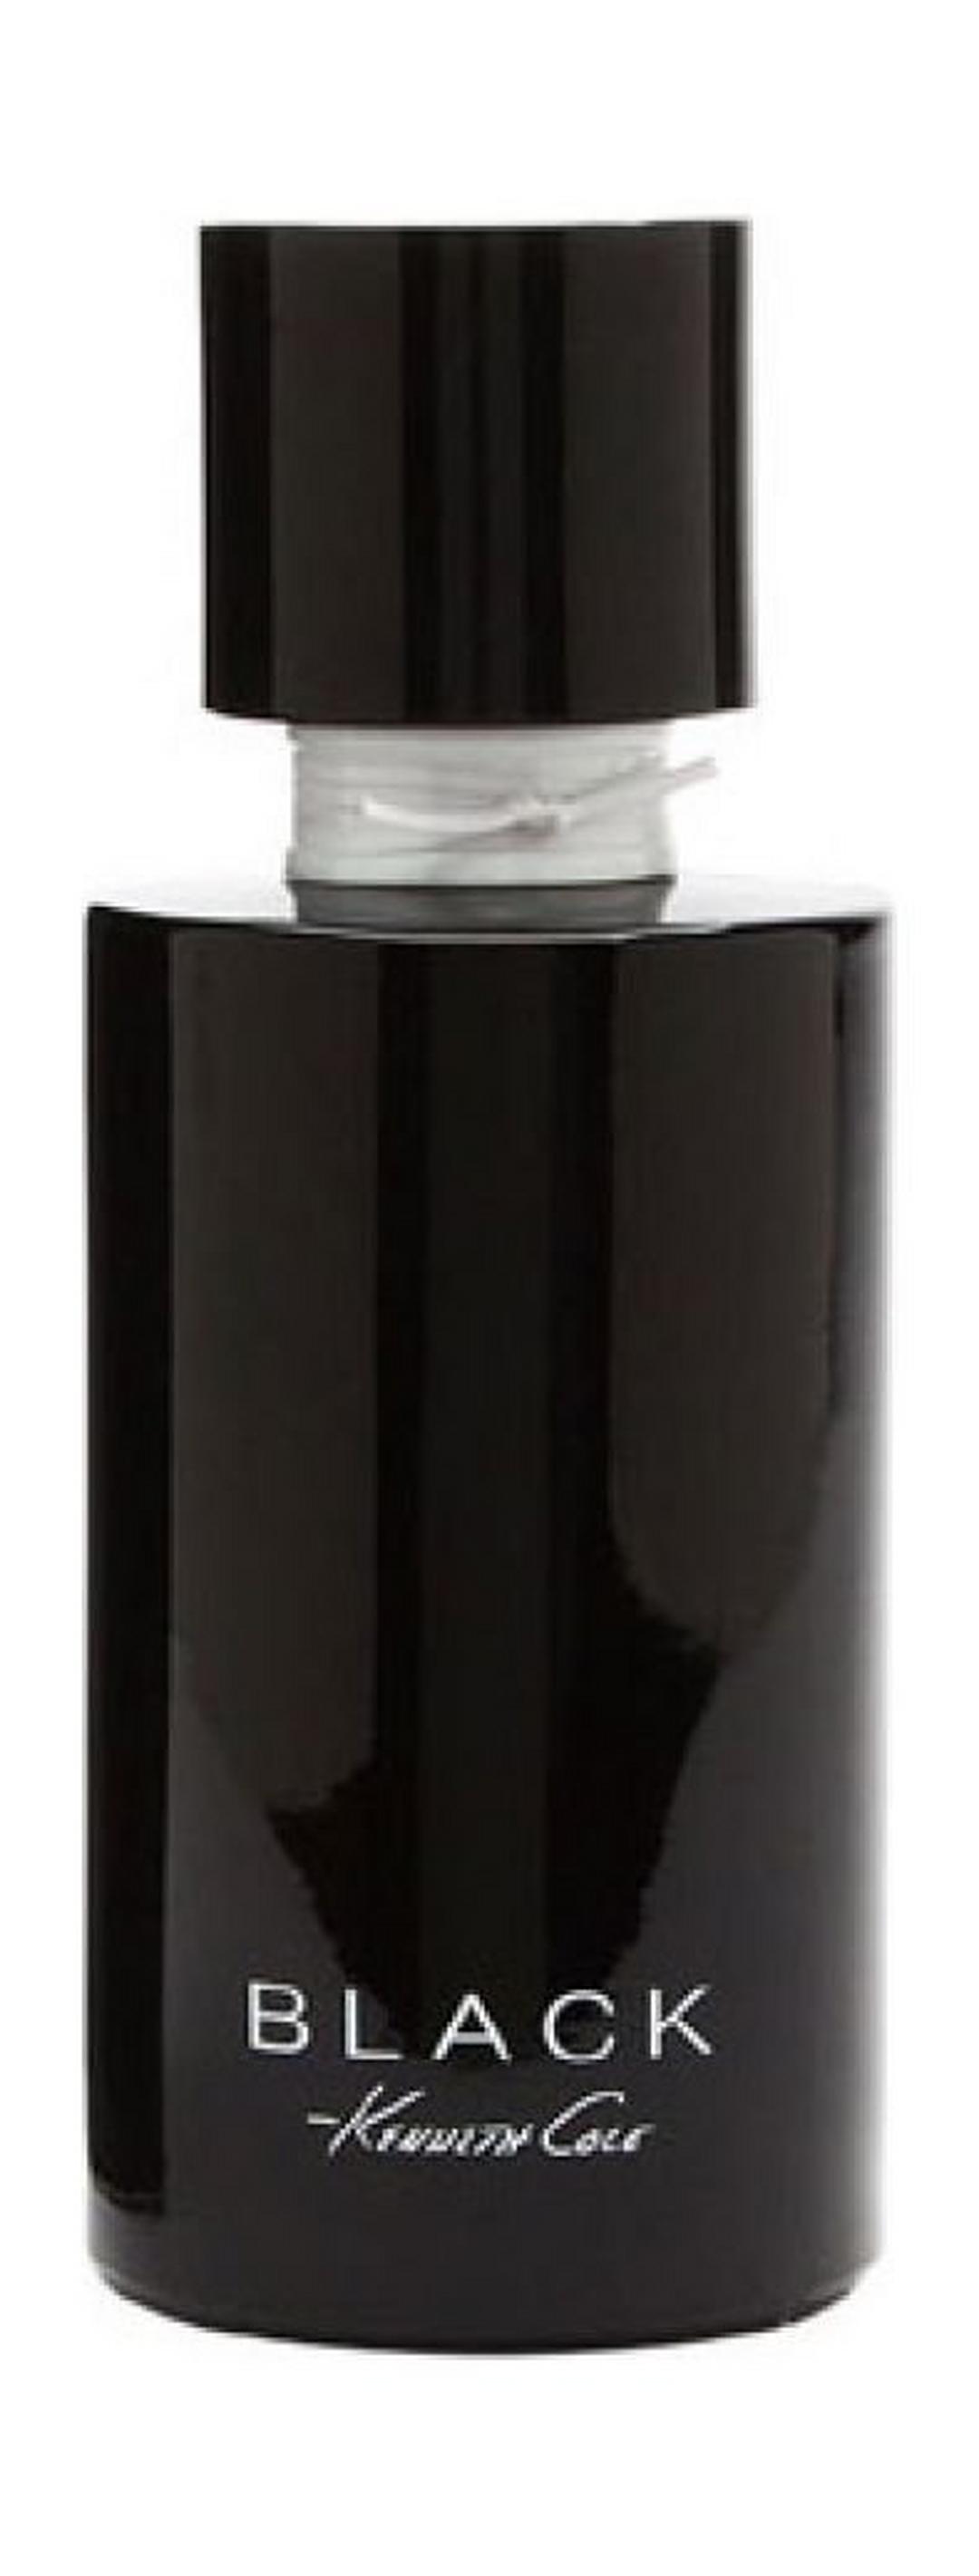 Black by Kenneth Cole For Women 100ml Eau de Parfum